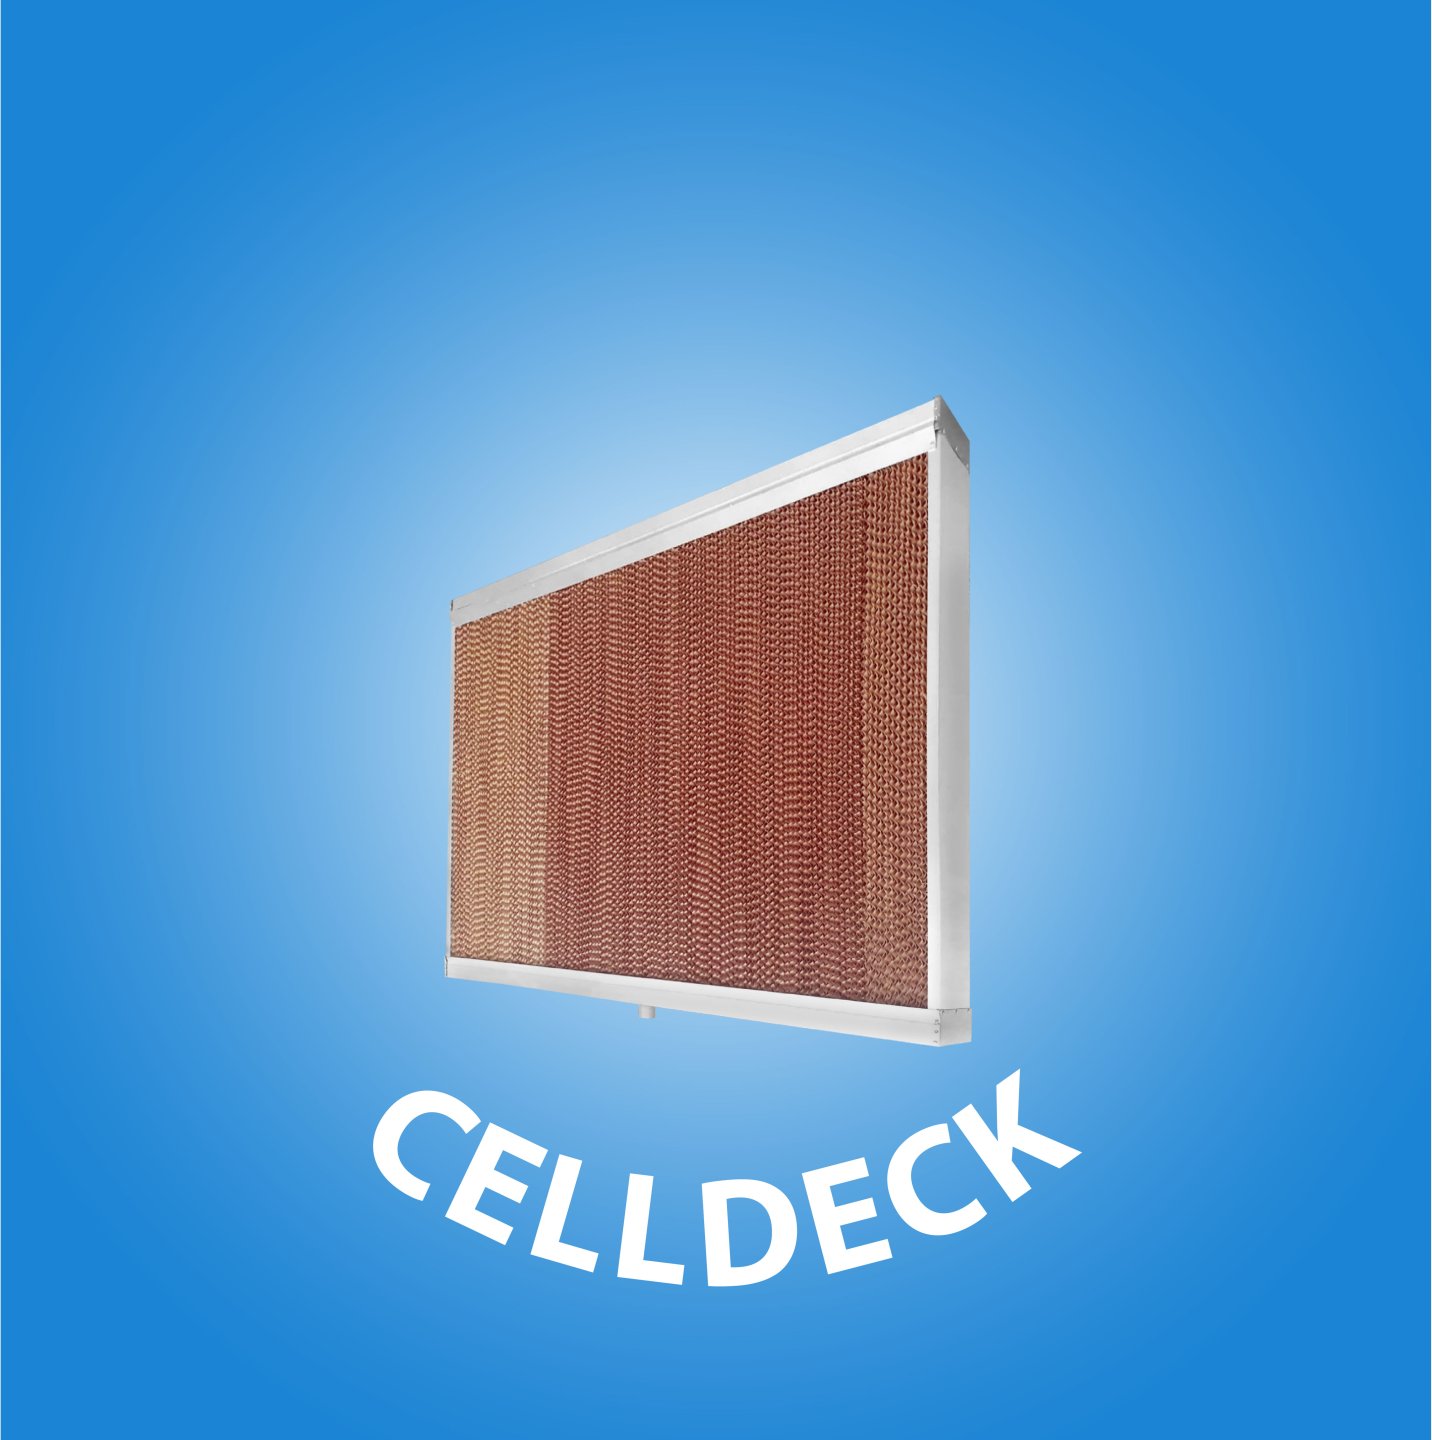  Celldeck cover kategori website 13